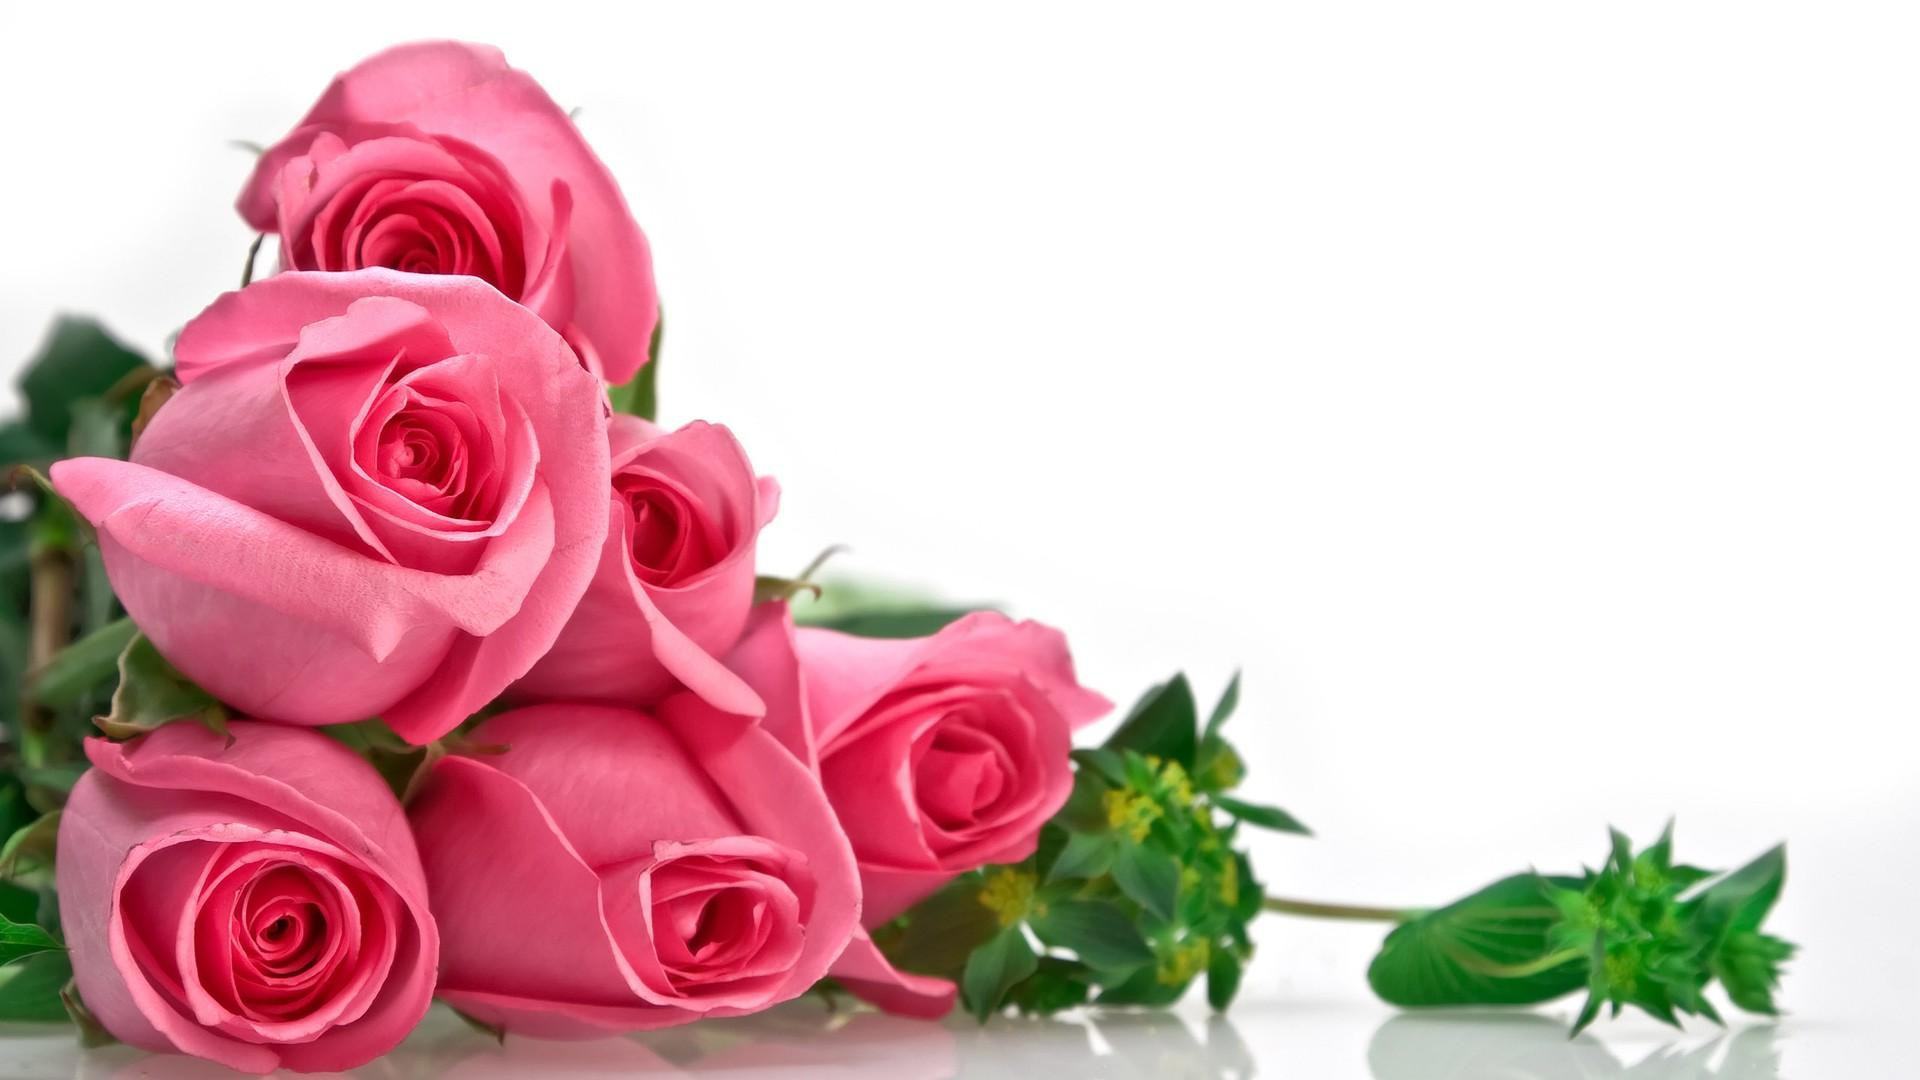 Hình ảnh hoa hồng đẹp và ý nghĩa nhất - TRẦN HƯNG ĐẠO